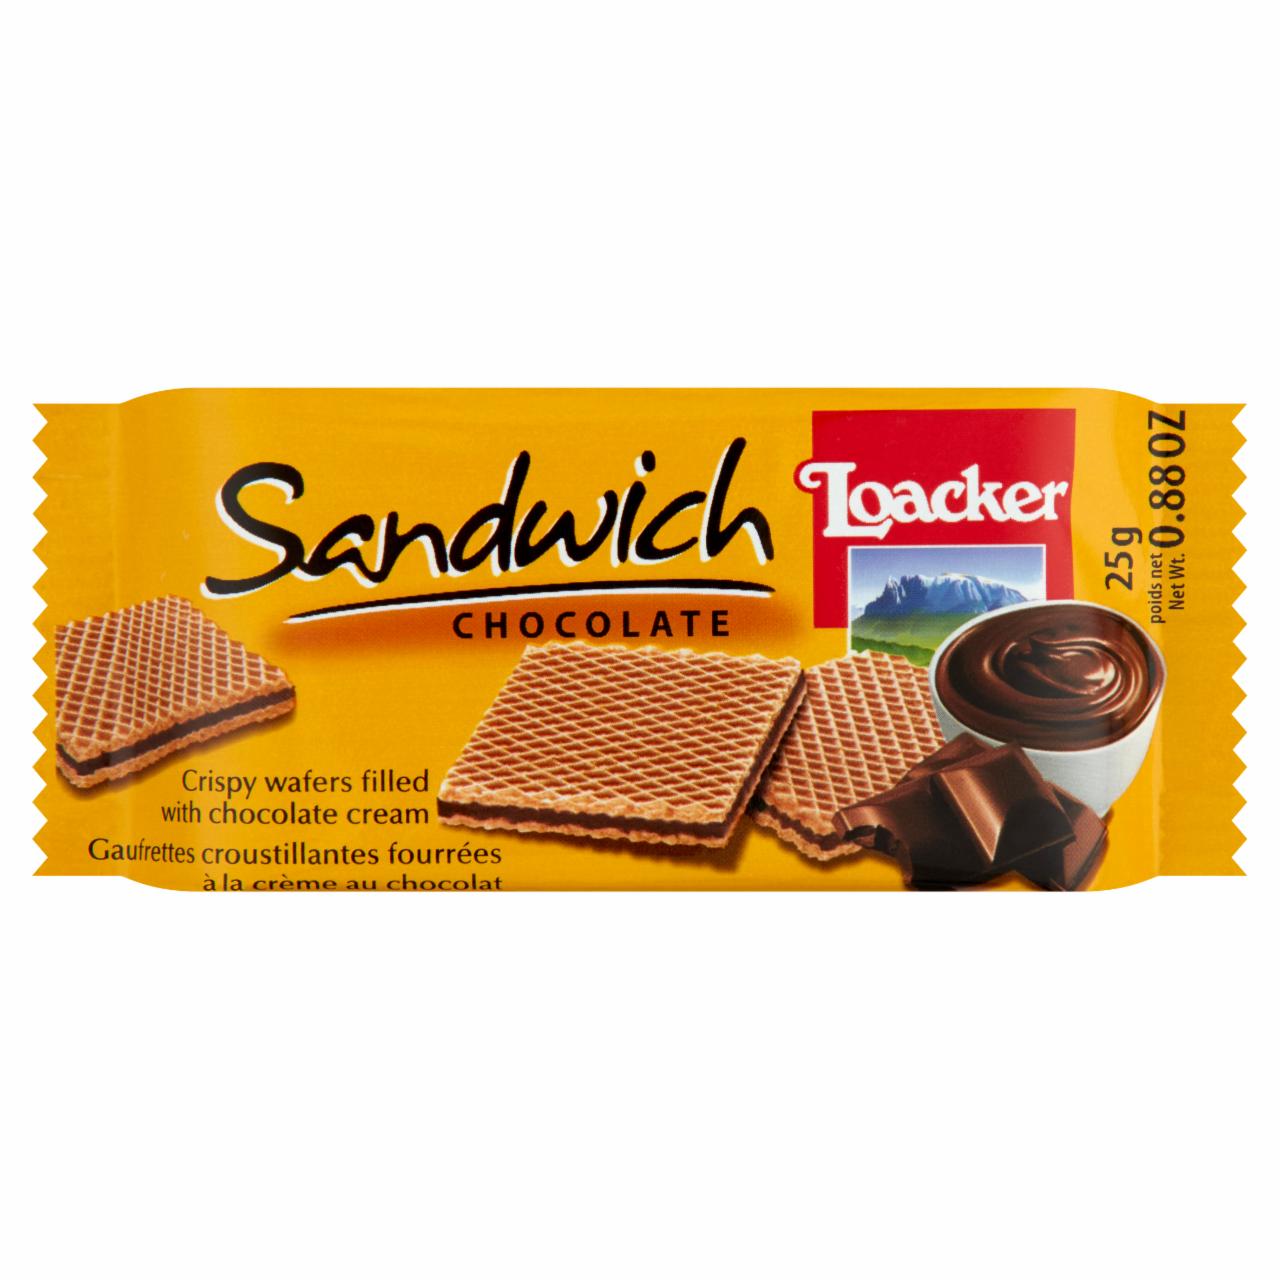 Képek - Loacker Sandwich Chocolate ropogós ostyák csokoládékrémmel töltve 25 g